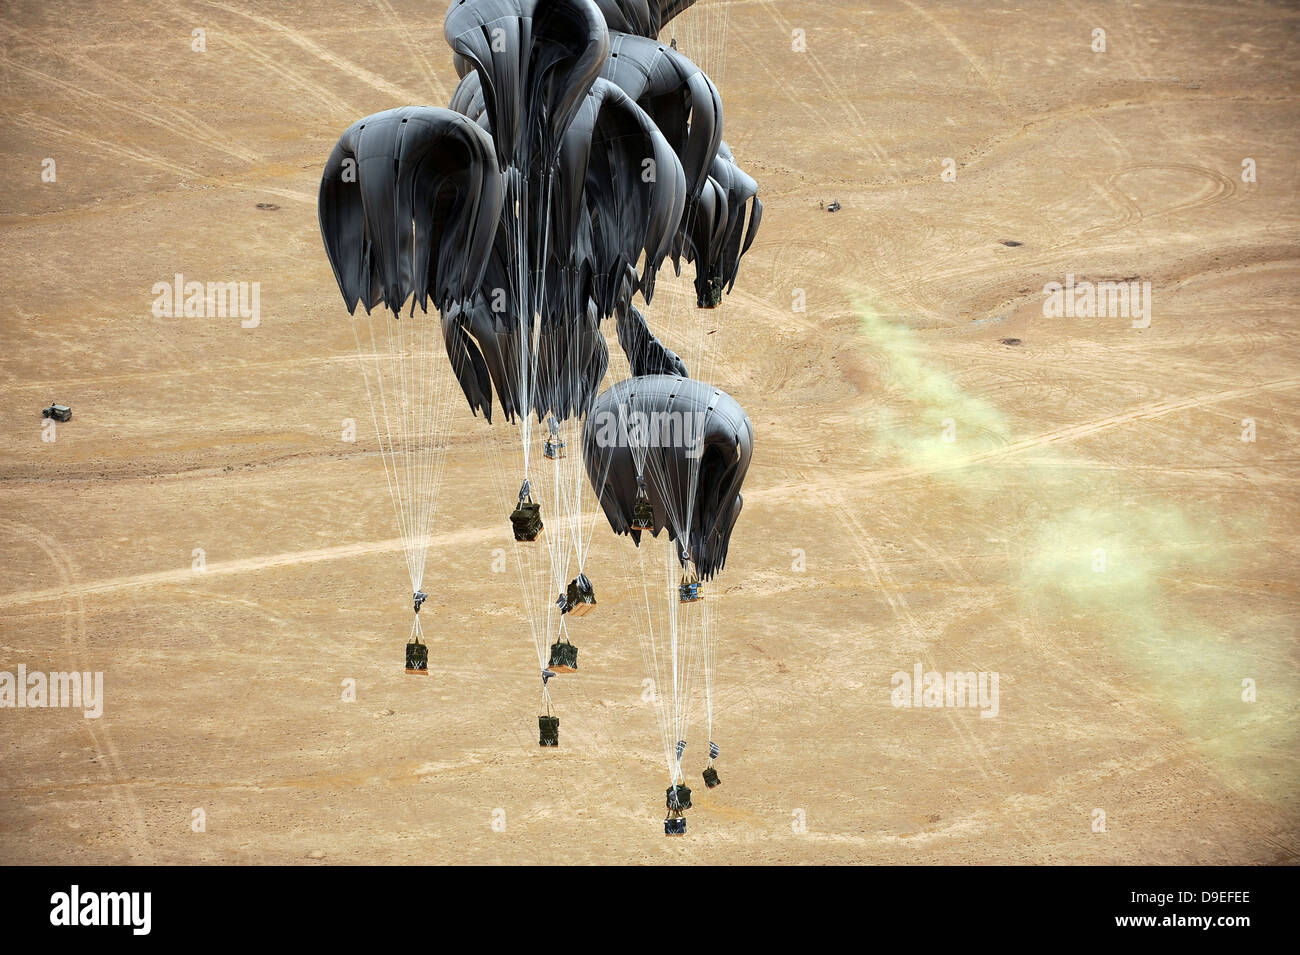 Container-Delivery-System bündelt Fallschirm hinunter eine Drop-Zone Warfighters vor Ort in Afghanistan geprägt. Stockfoto